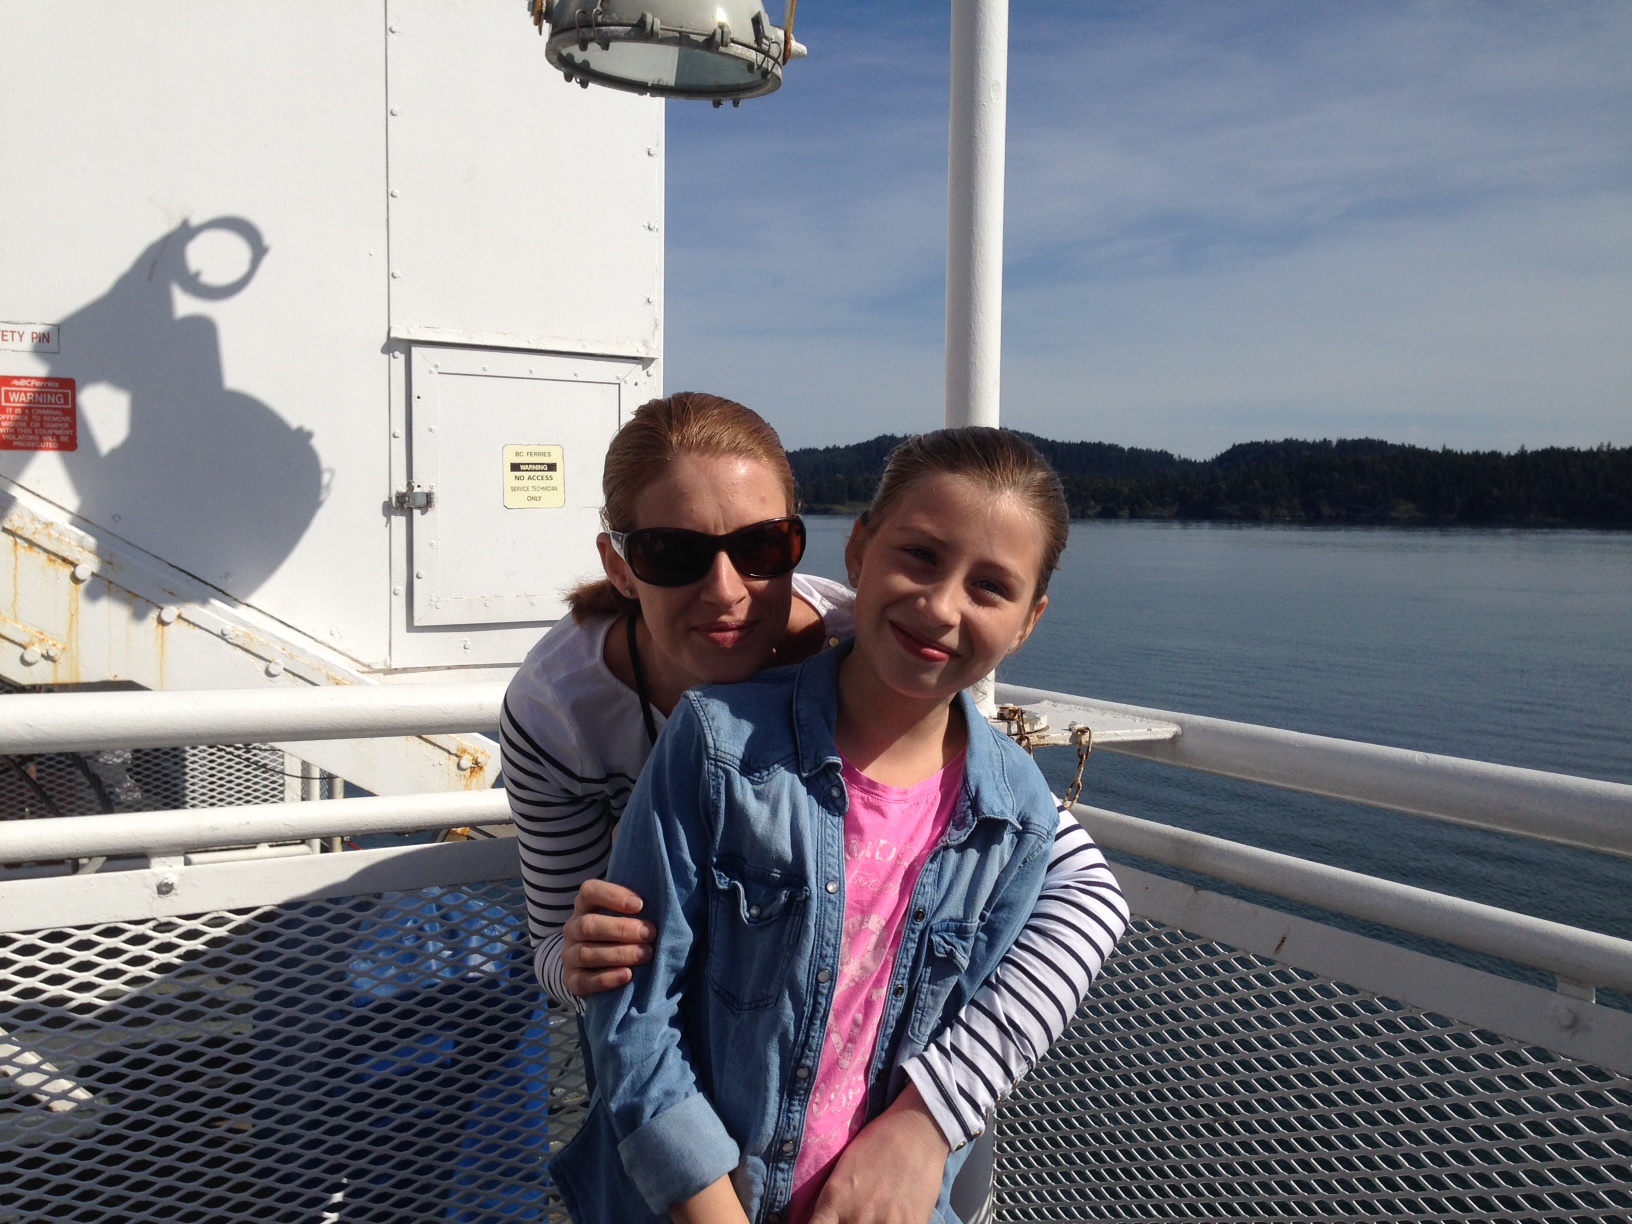 Foto: Felicia & Linda på väg till Vancouver Island.